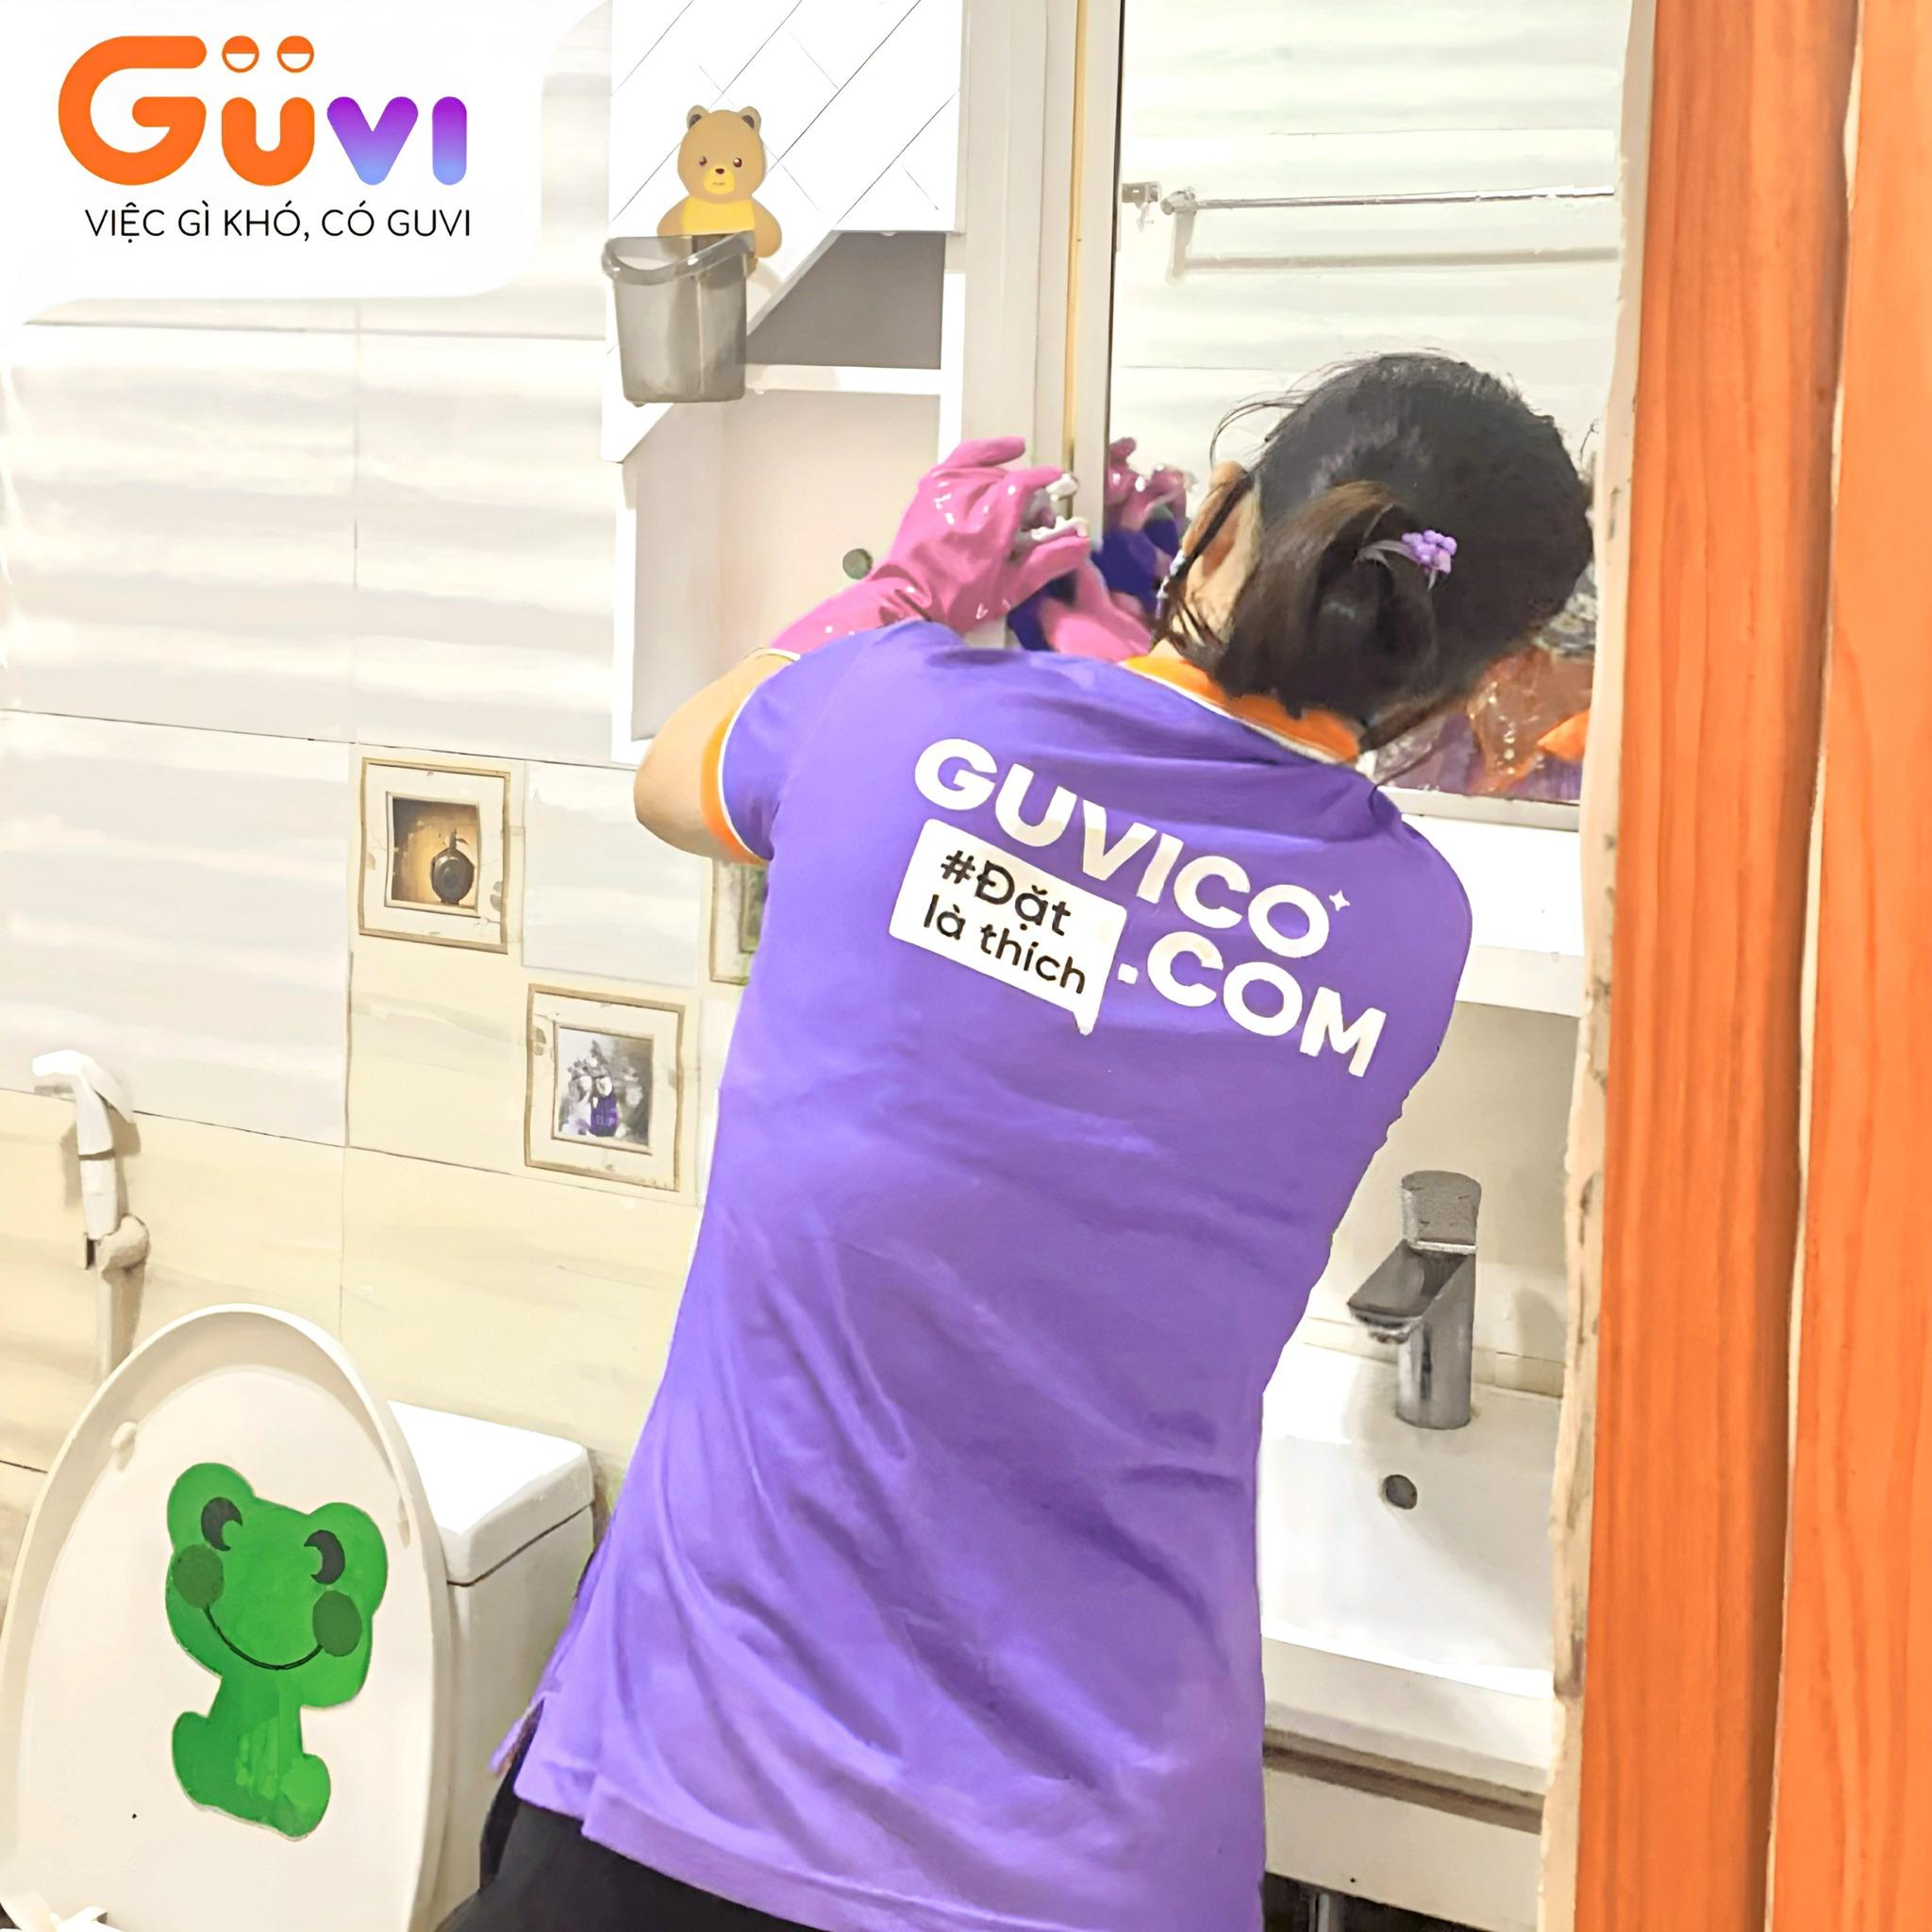 Ứng dụng GUVI - Mô hình "Grab" trong lĩnh vực giúp việc tại Việt Nam - 2